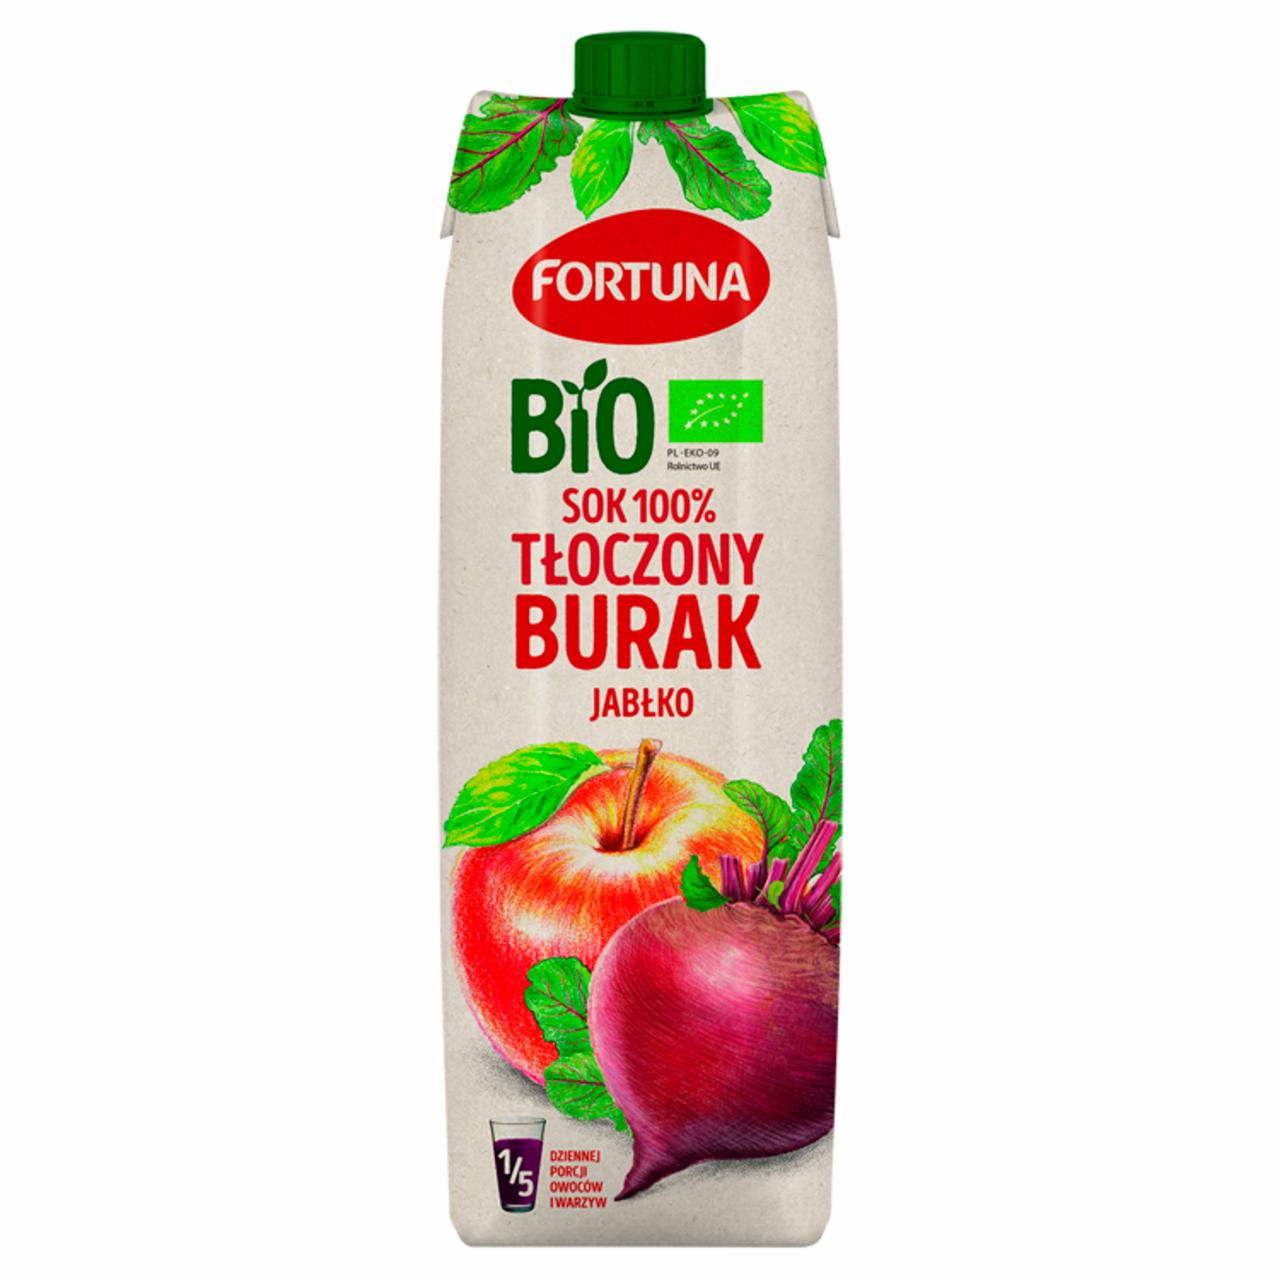 Zdjęcia - Fortuna Bio Sok 100% tłoczony jabłko burak ćwikłowy 1 l